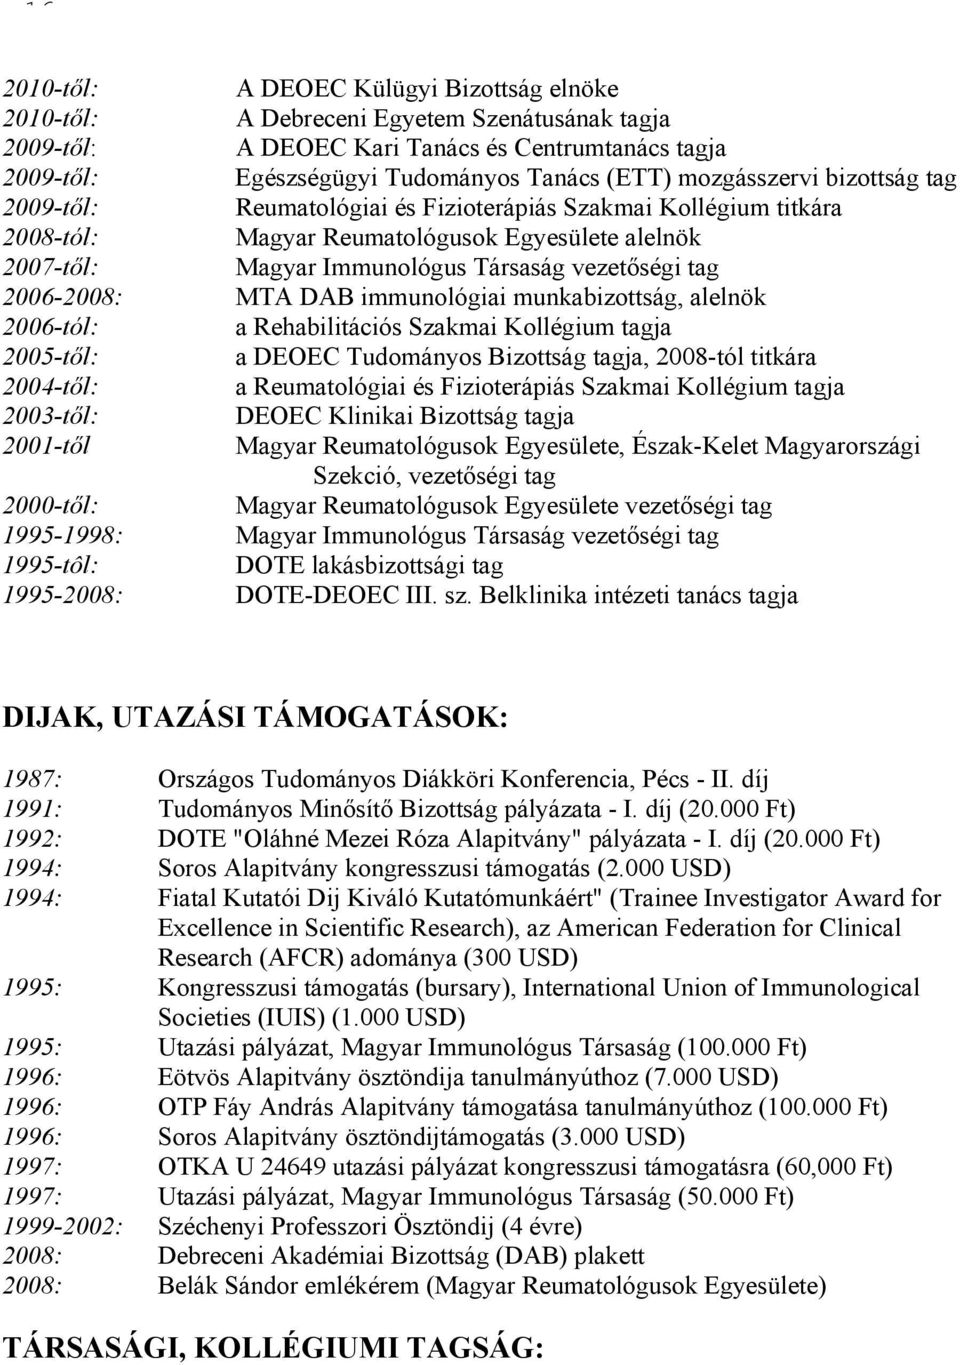 2006-2008: MTA DAB immunológiai munkabizottság, alelnök 2006-tól: a Rehabilitációs Szakmai Kollégium tagja 2005-től: a DEOEC Tudományos Bizottság tagja, 2008-tól titkára 2004-től: a Reumatológiai és